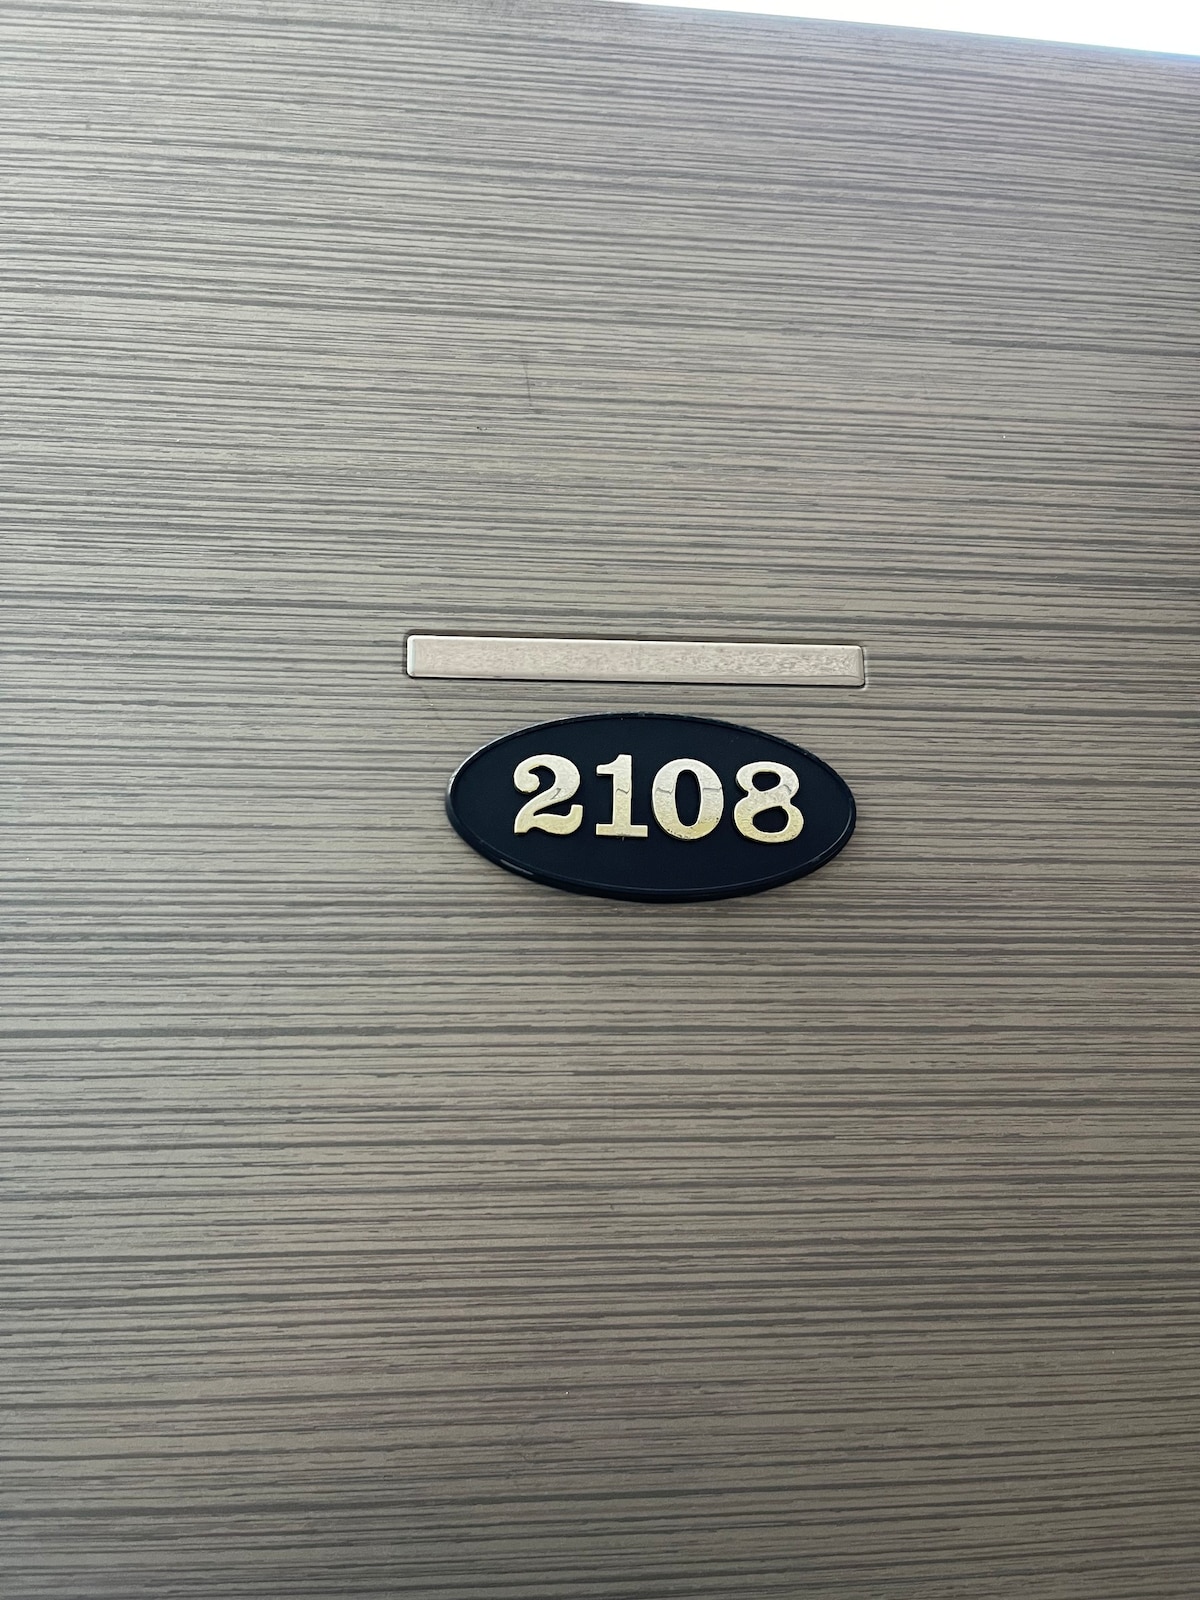 房间2108 ， 1楼， 7坪九老数字综合区全套住宿